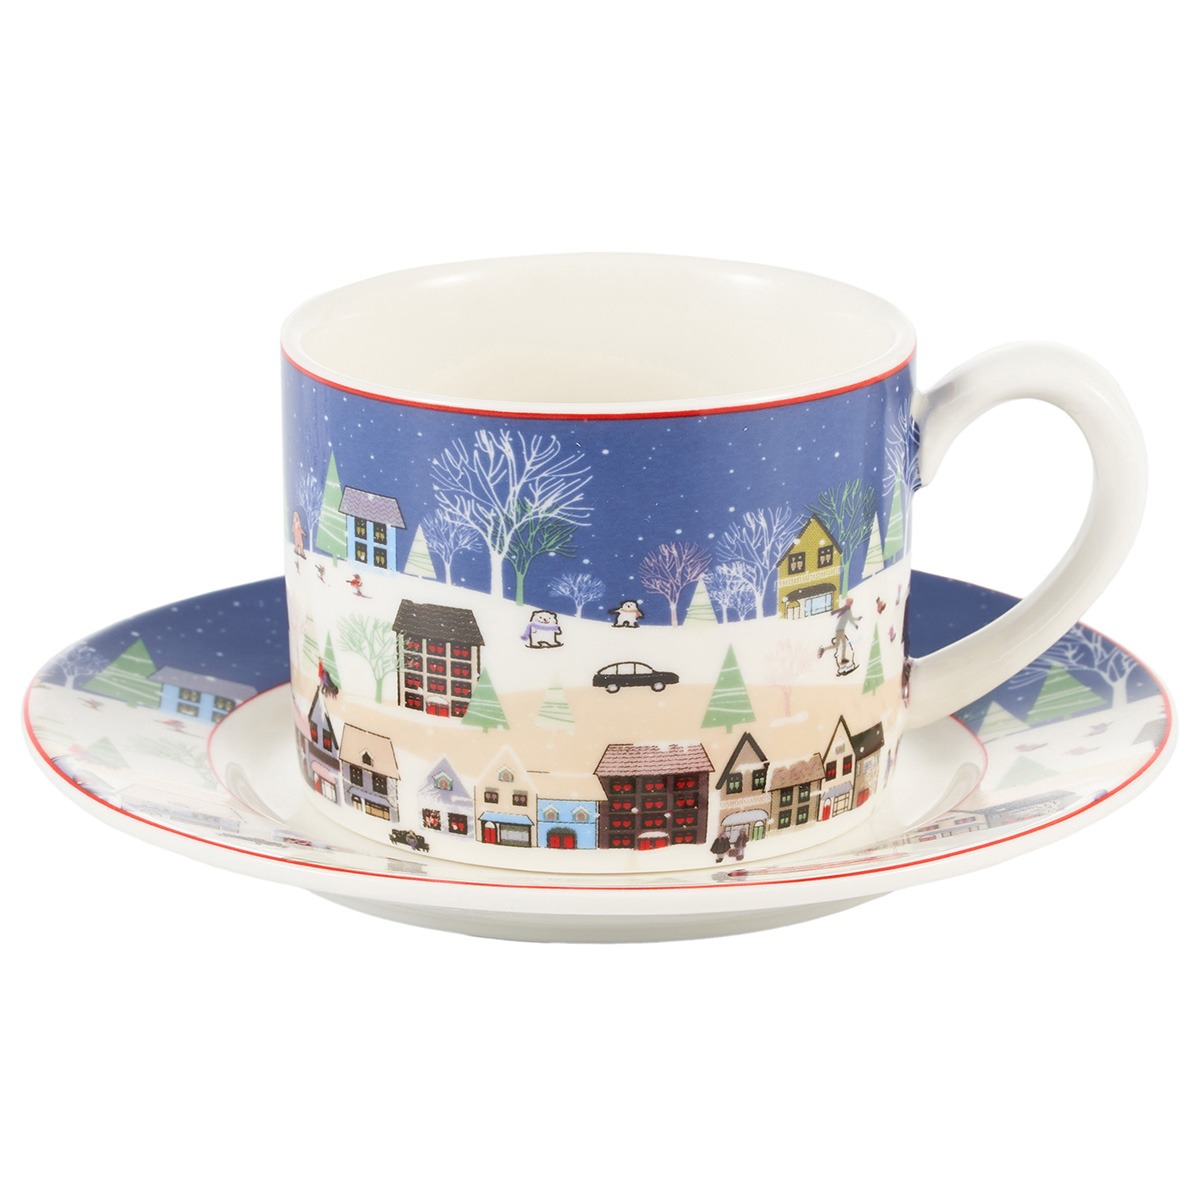 Чайная пара Gipfel Christmas фарфор синий чашка 250 мл, блюдце 14 см чашка чайная tudor royal circle 200 мл